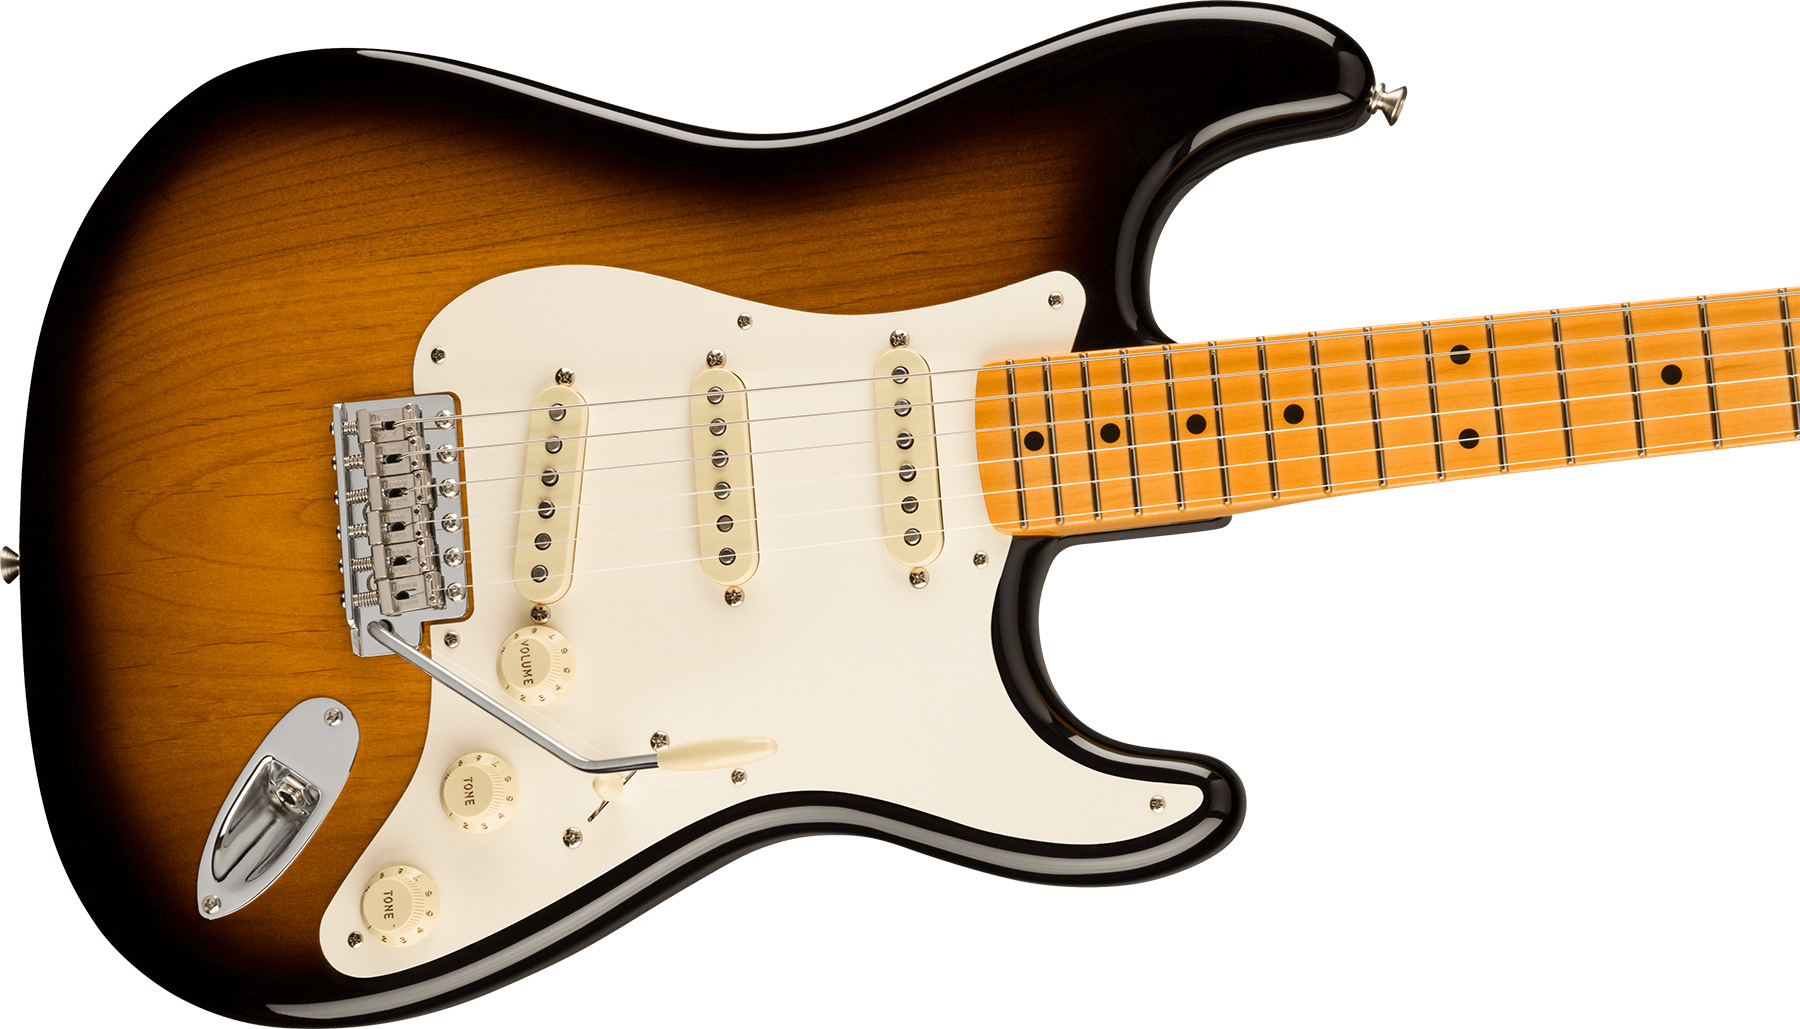 Fender Strat 1957 American Vintage Ii Usa 3s Trem Mn - 2-color Sunburst - Guitare Électrique Forme Str - Variation 2